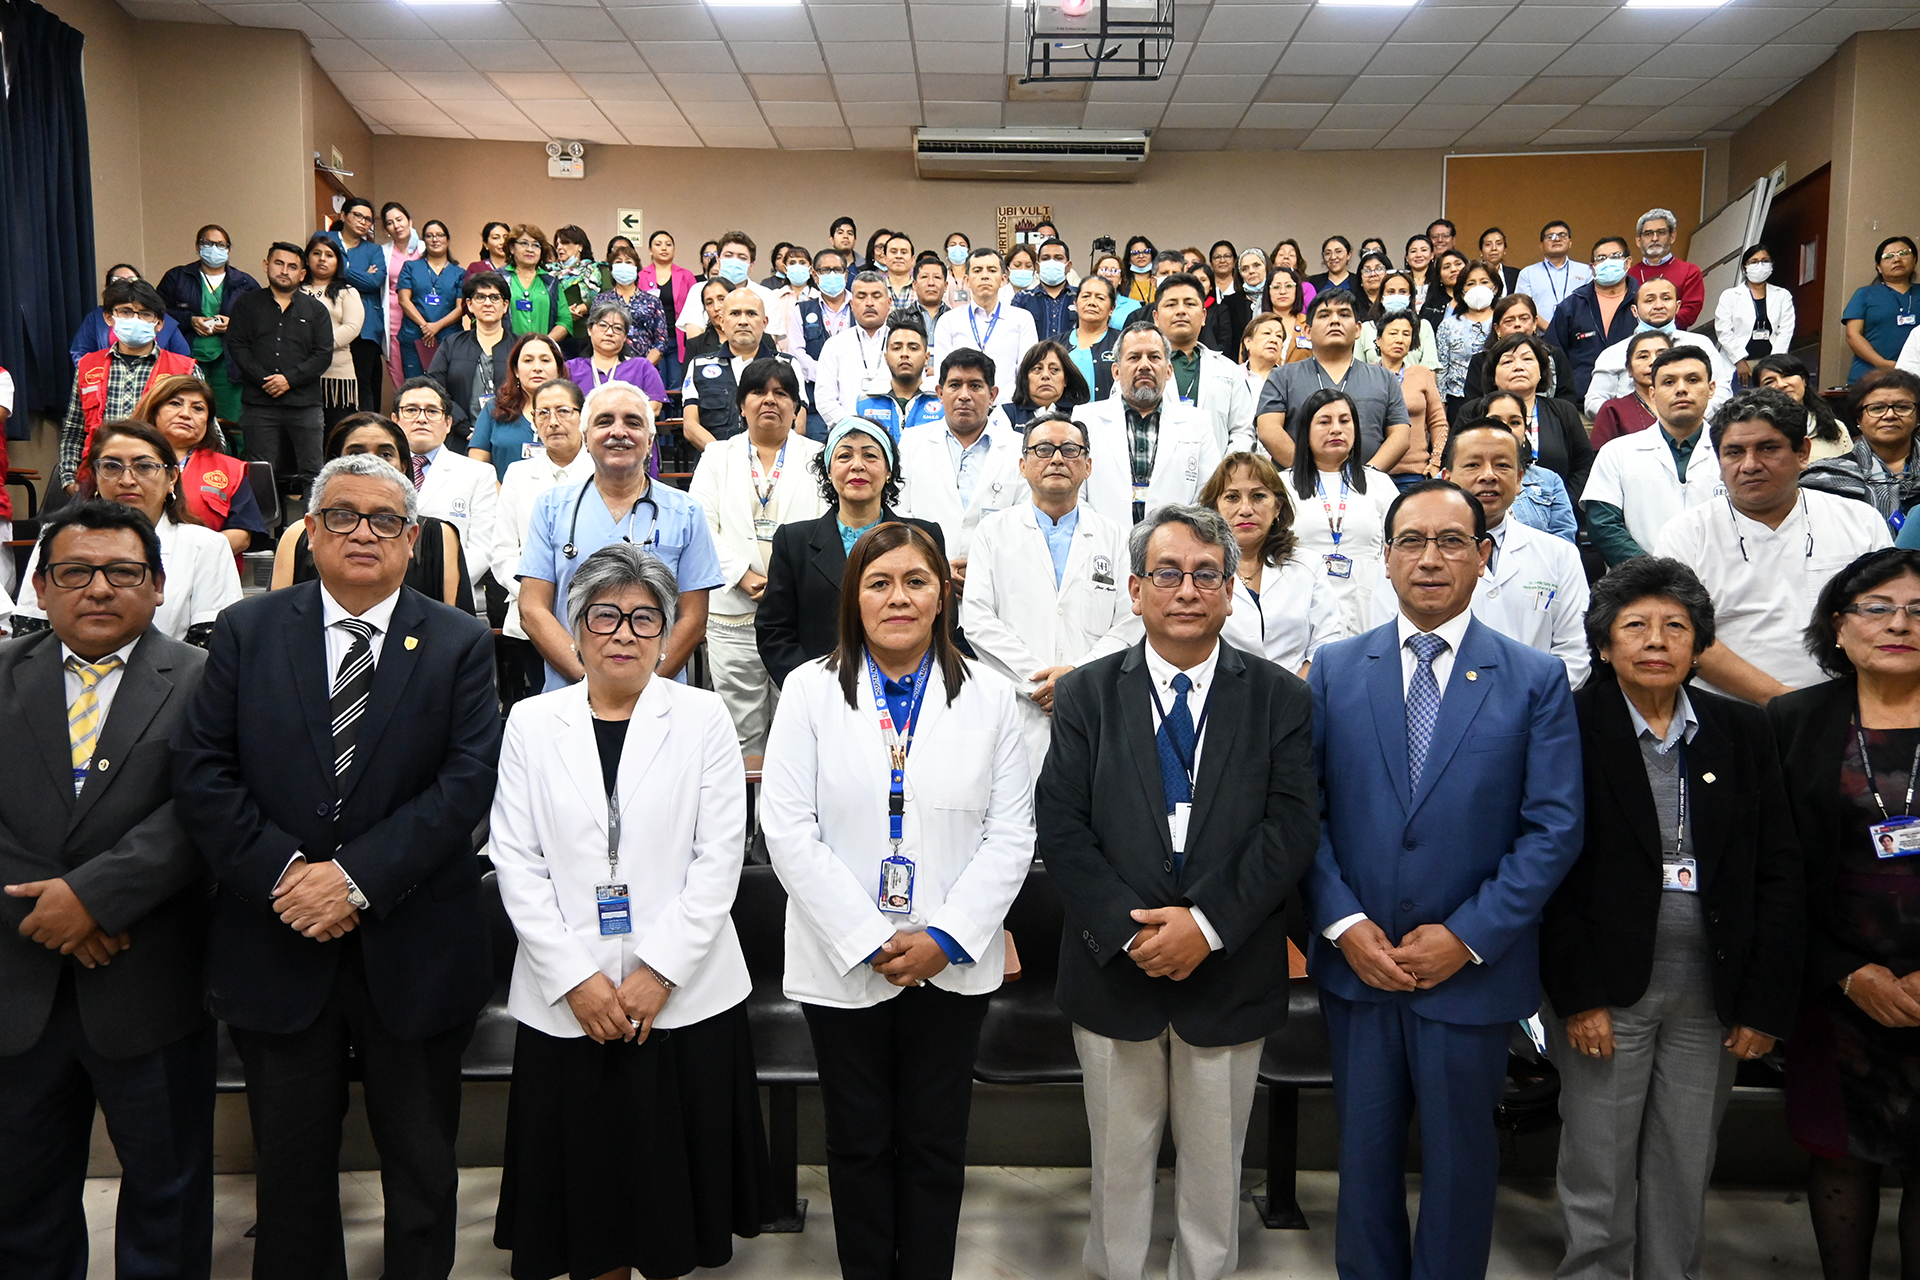 Imagen de la juramentacion de la nueva directora Maribel Juscamayta del Hospital Cayetano Heredia